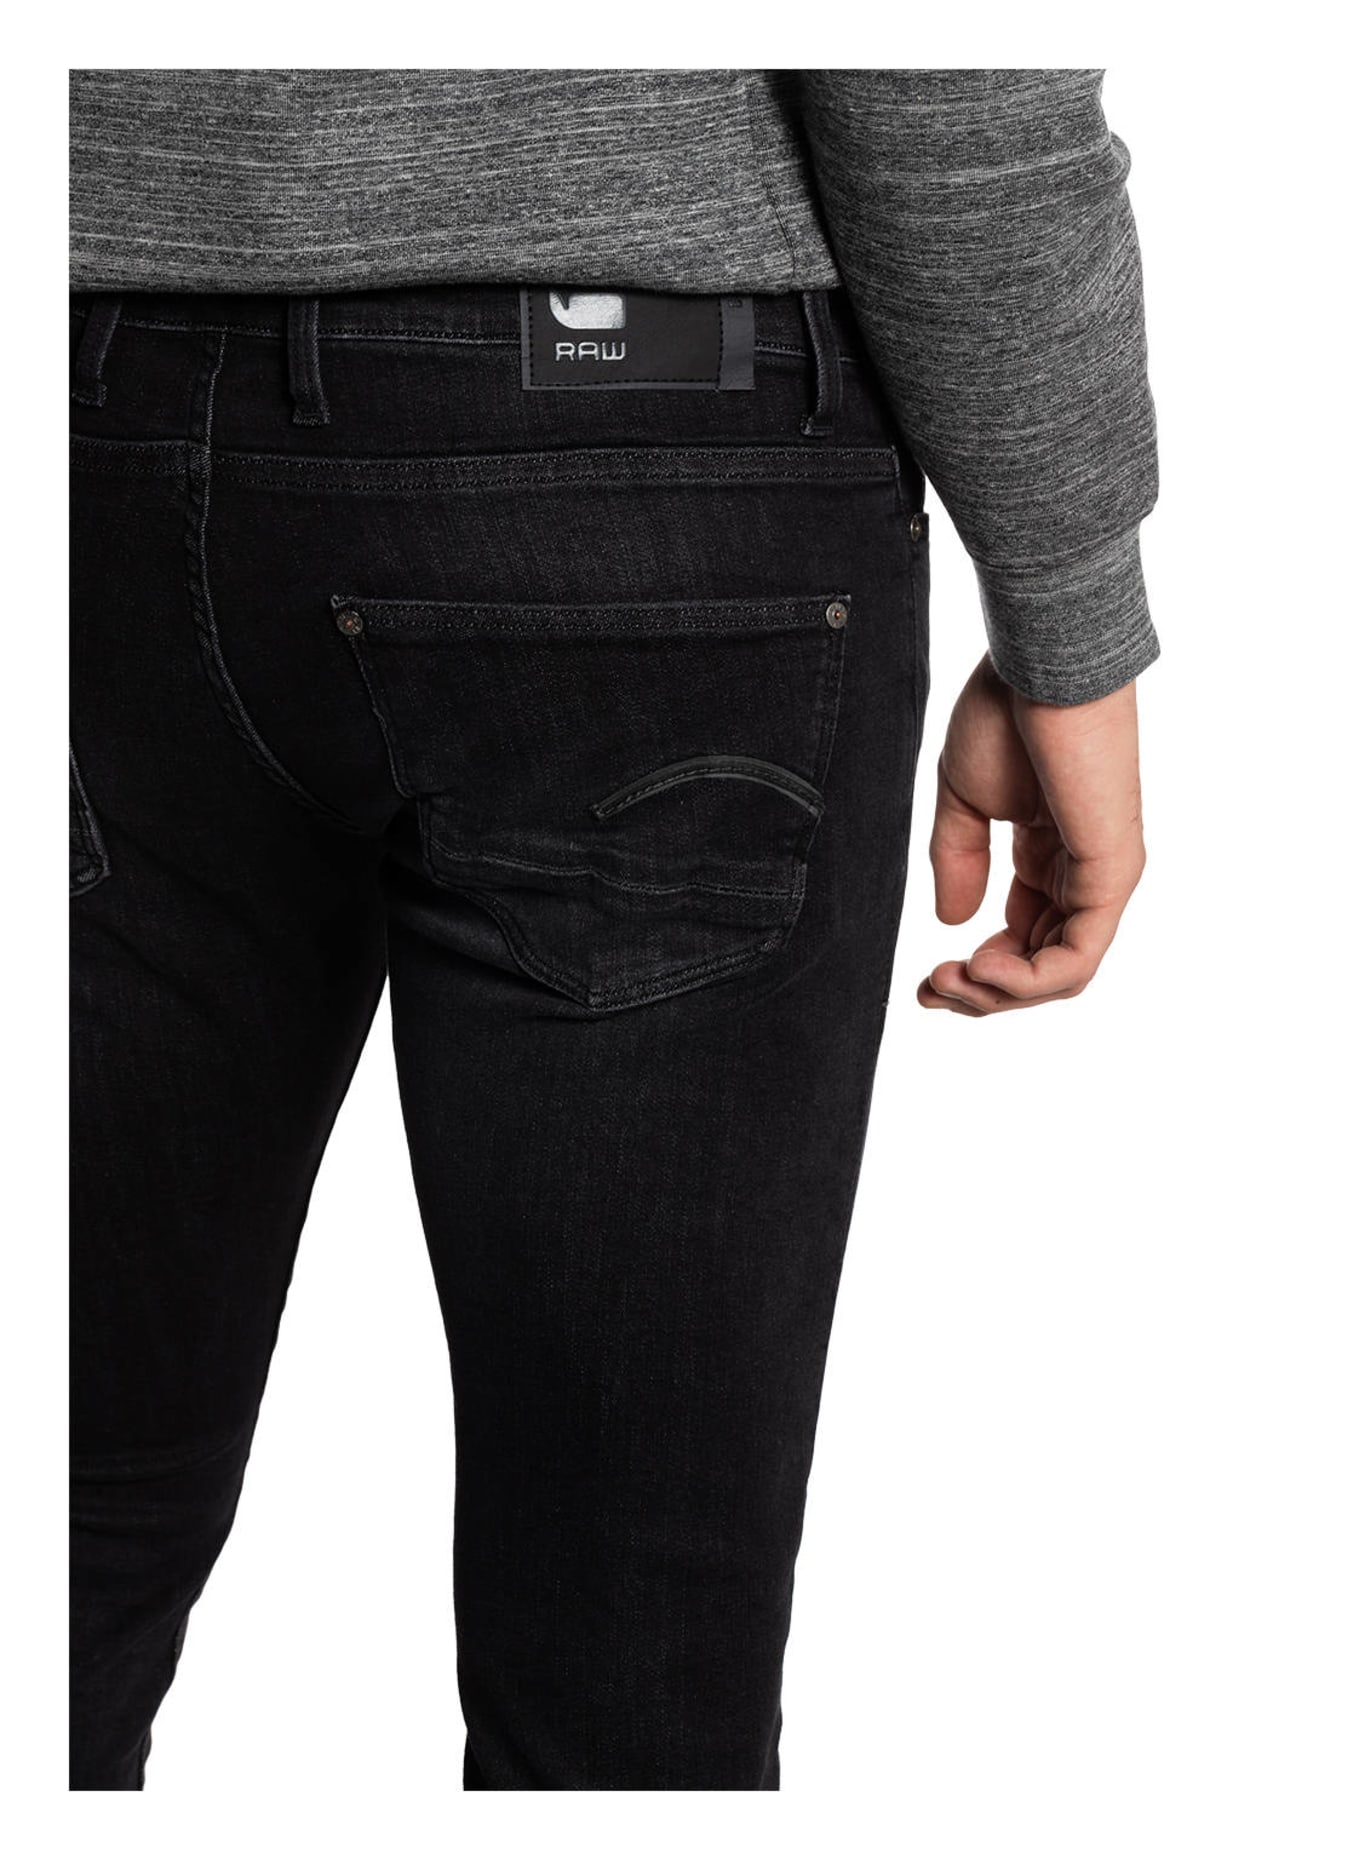 G-Star RAW Jeans REVEND Skinny Fit, Farbe: A592 medium aged faded (Bild 5)